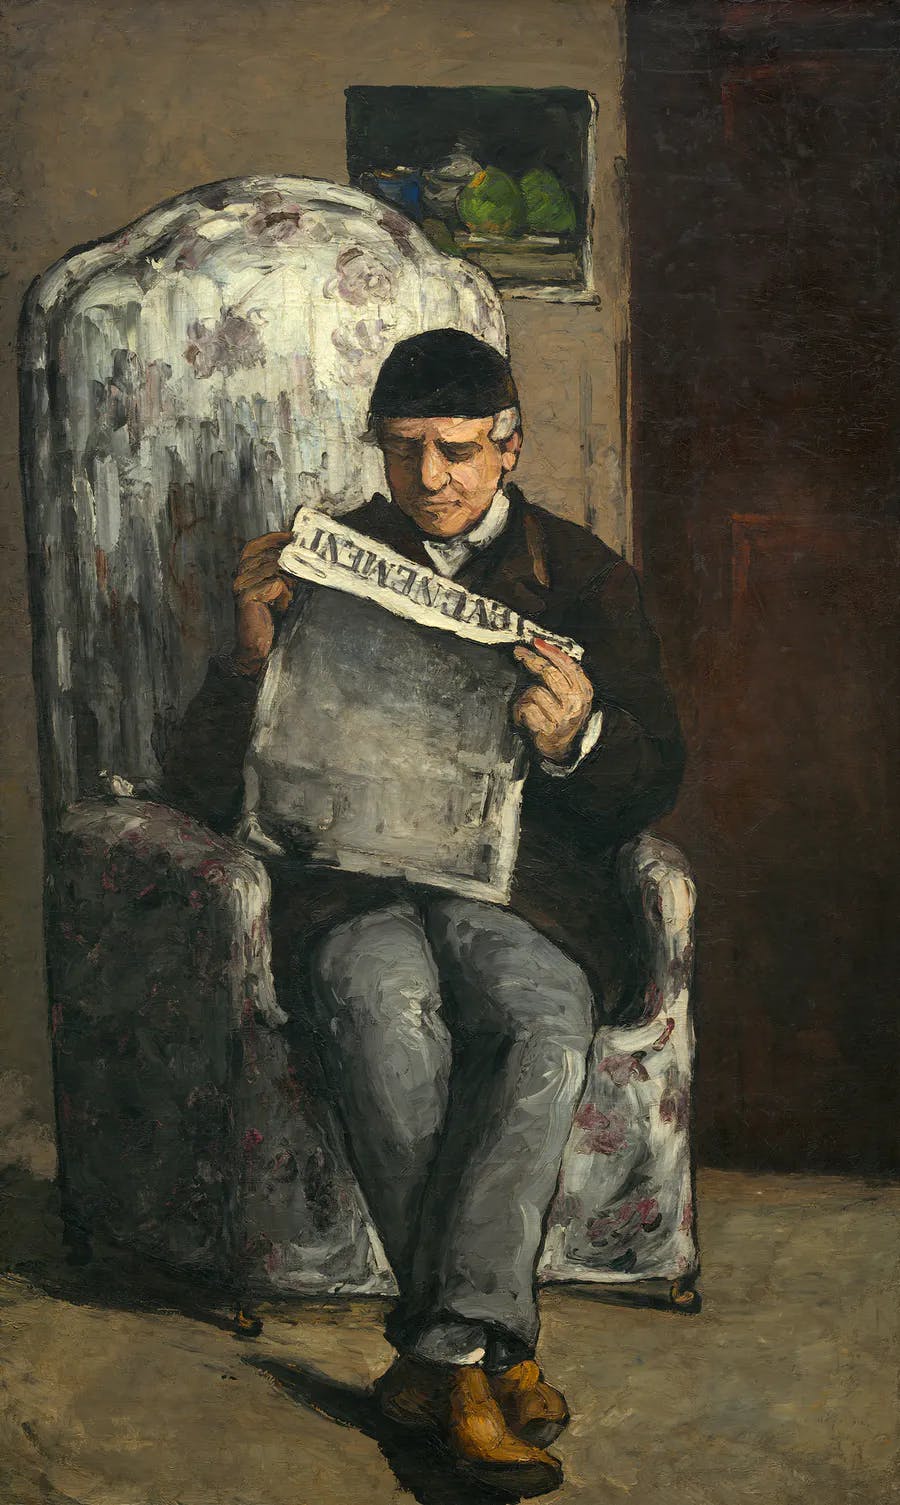 Paul Cezanne, The Artist's Father, Reading 'L'Événement', 1866, oil on canvas. Photo public domain